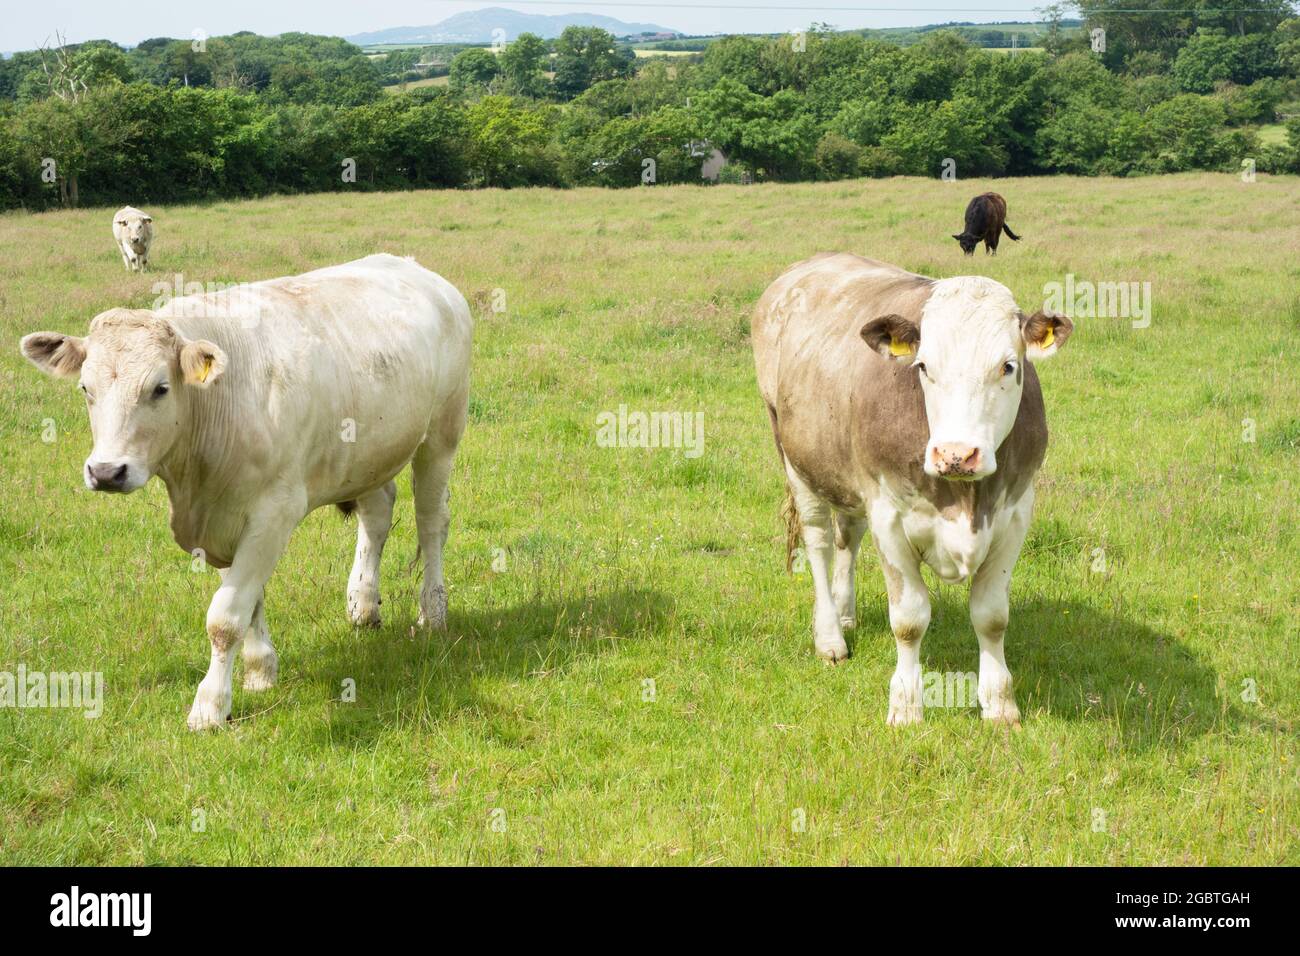 Curieux, mais timide, le bétail gallois / vaches / bétail dans un champ Royaume-Uni Banque D'Images